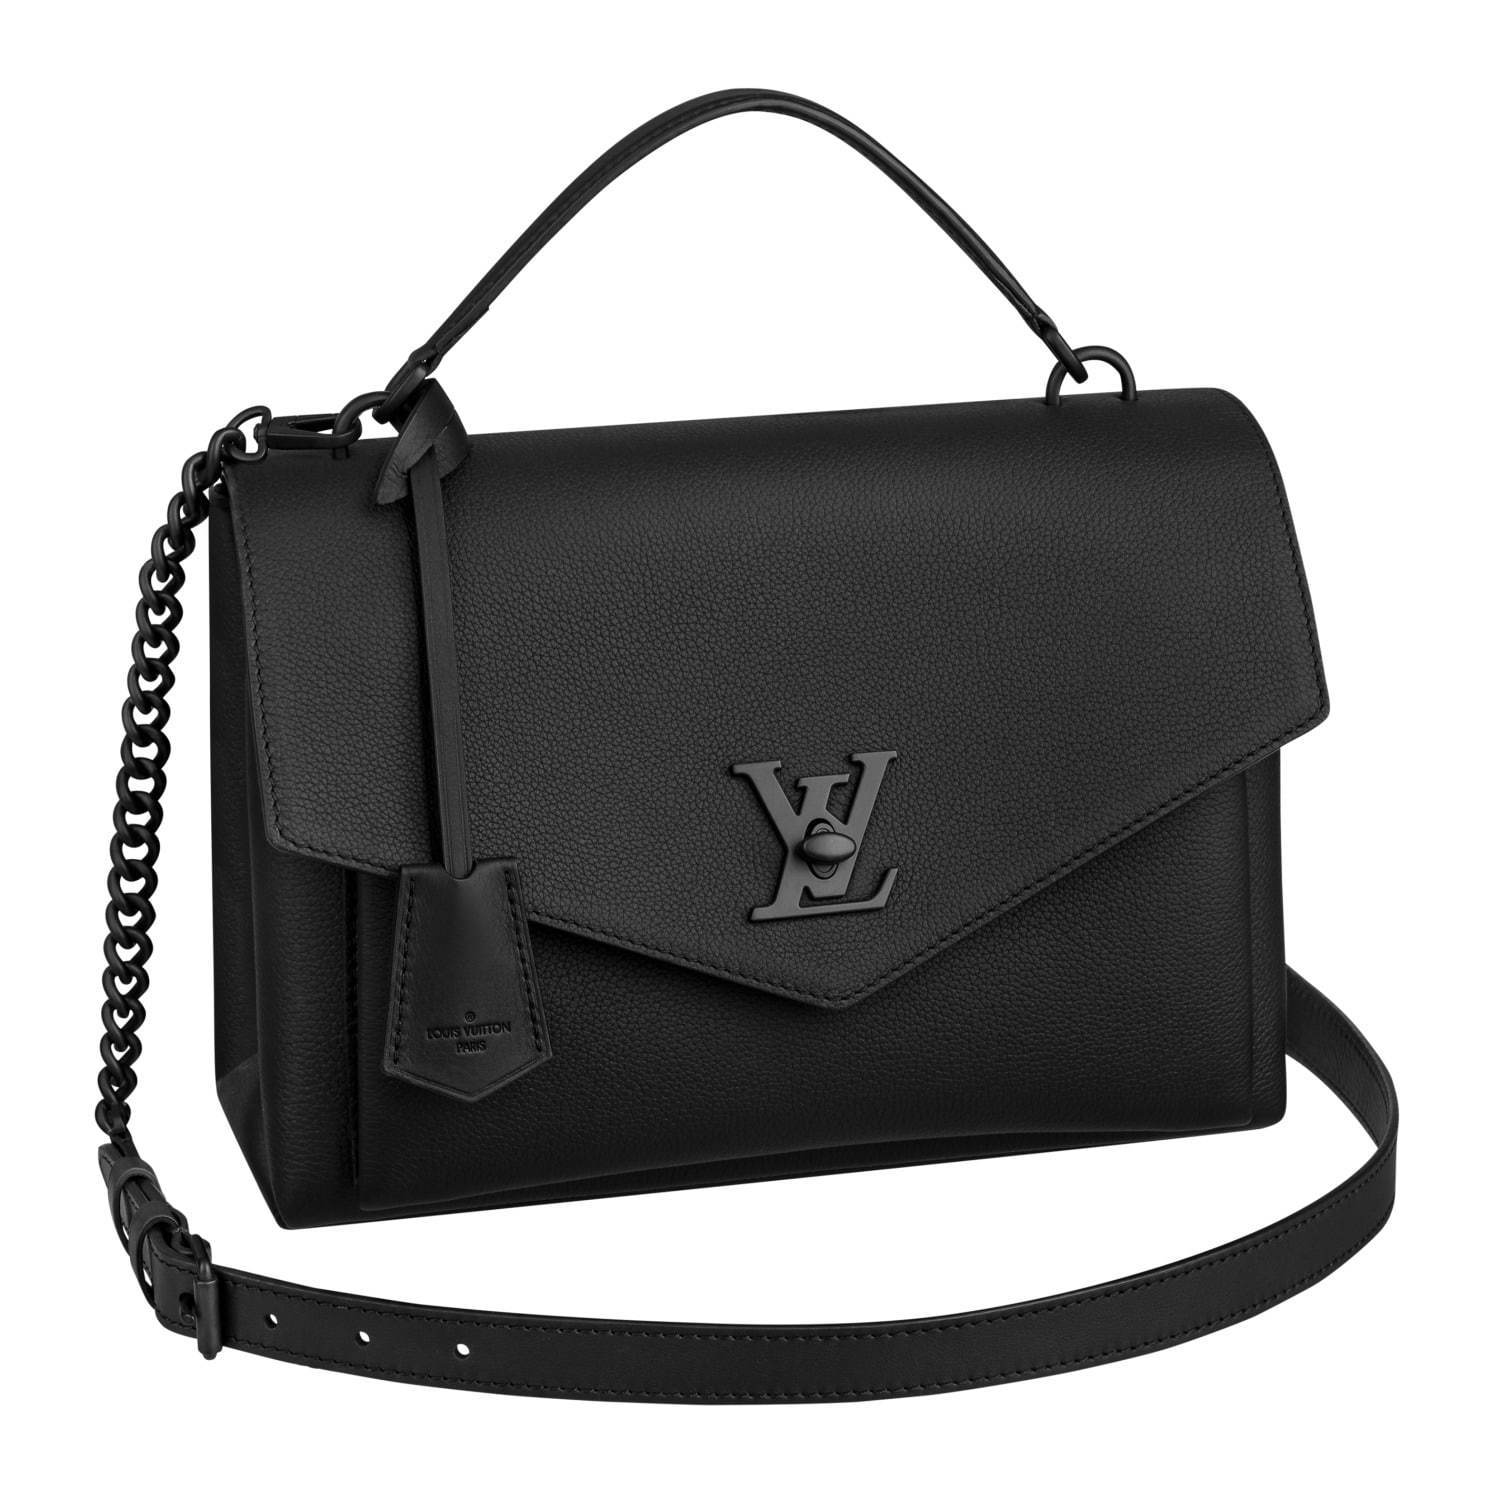 ルイ・ヴィトンのバッグ「ロックミー」に“ワントーン”の新作、LVターン 